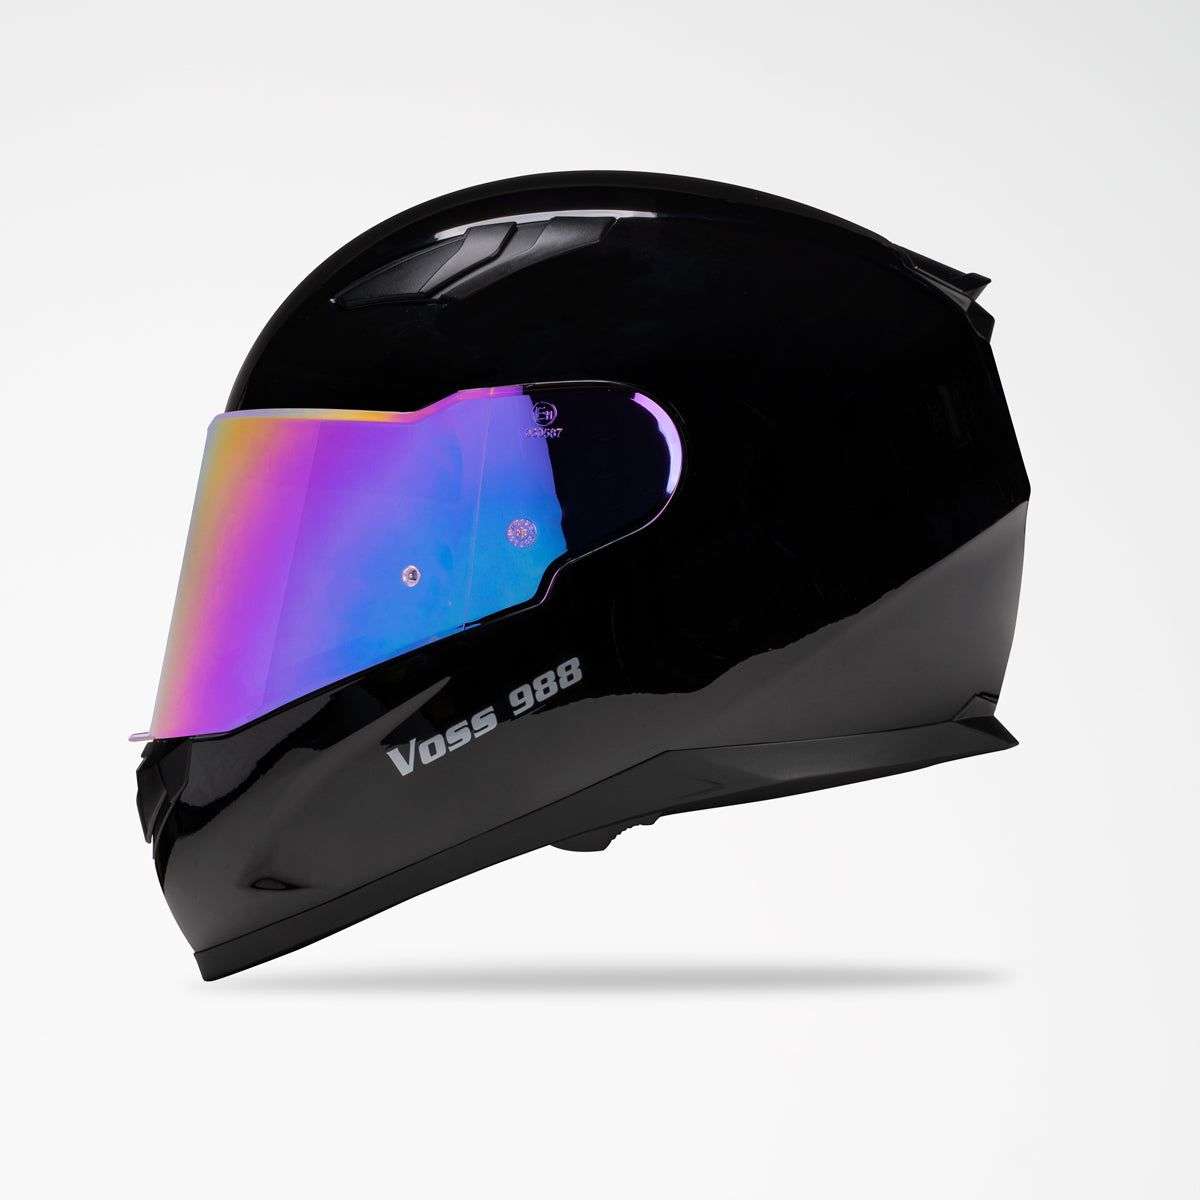 Voss 988 Moto-1 Gloss Black Helmet